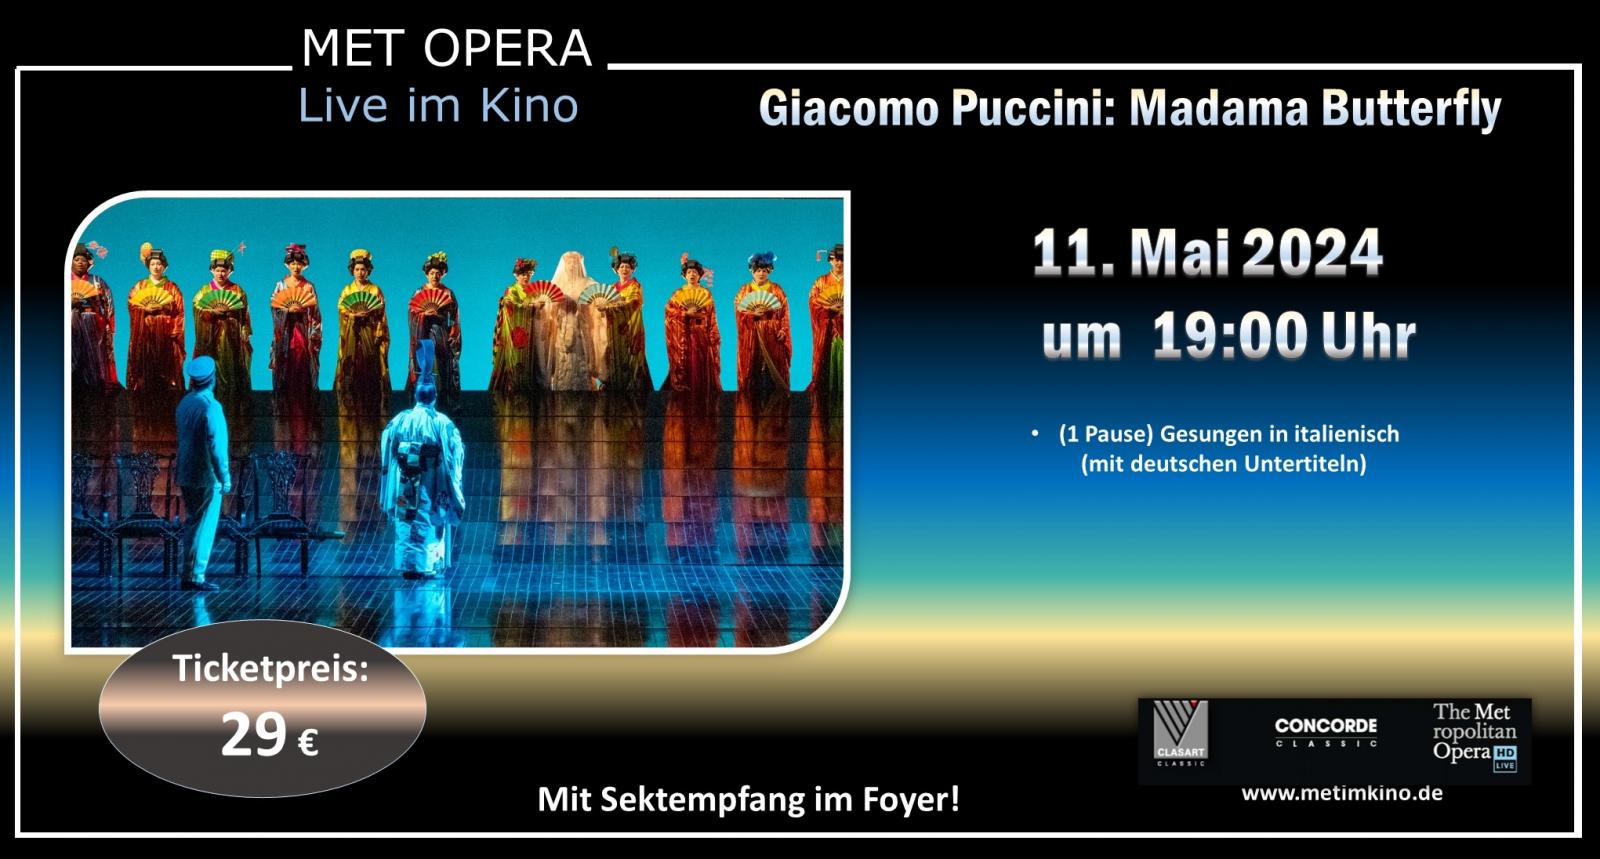  Met Opera LIVE aus New York am 11. Mai um 19:00 Uhr: Giacomo Puccini- Madama Butterfly